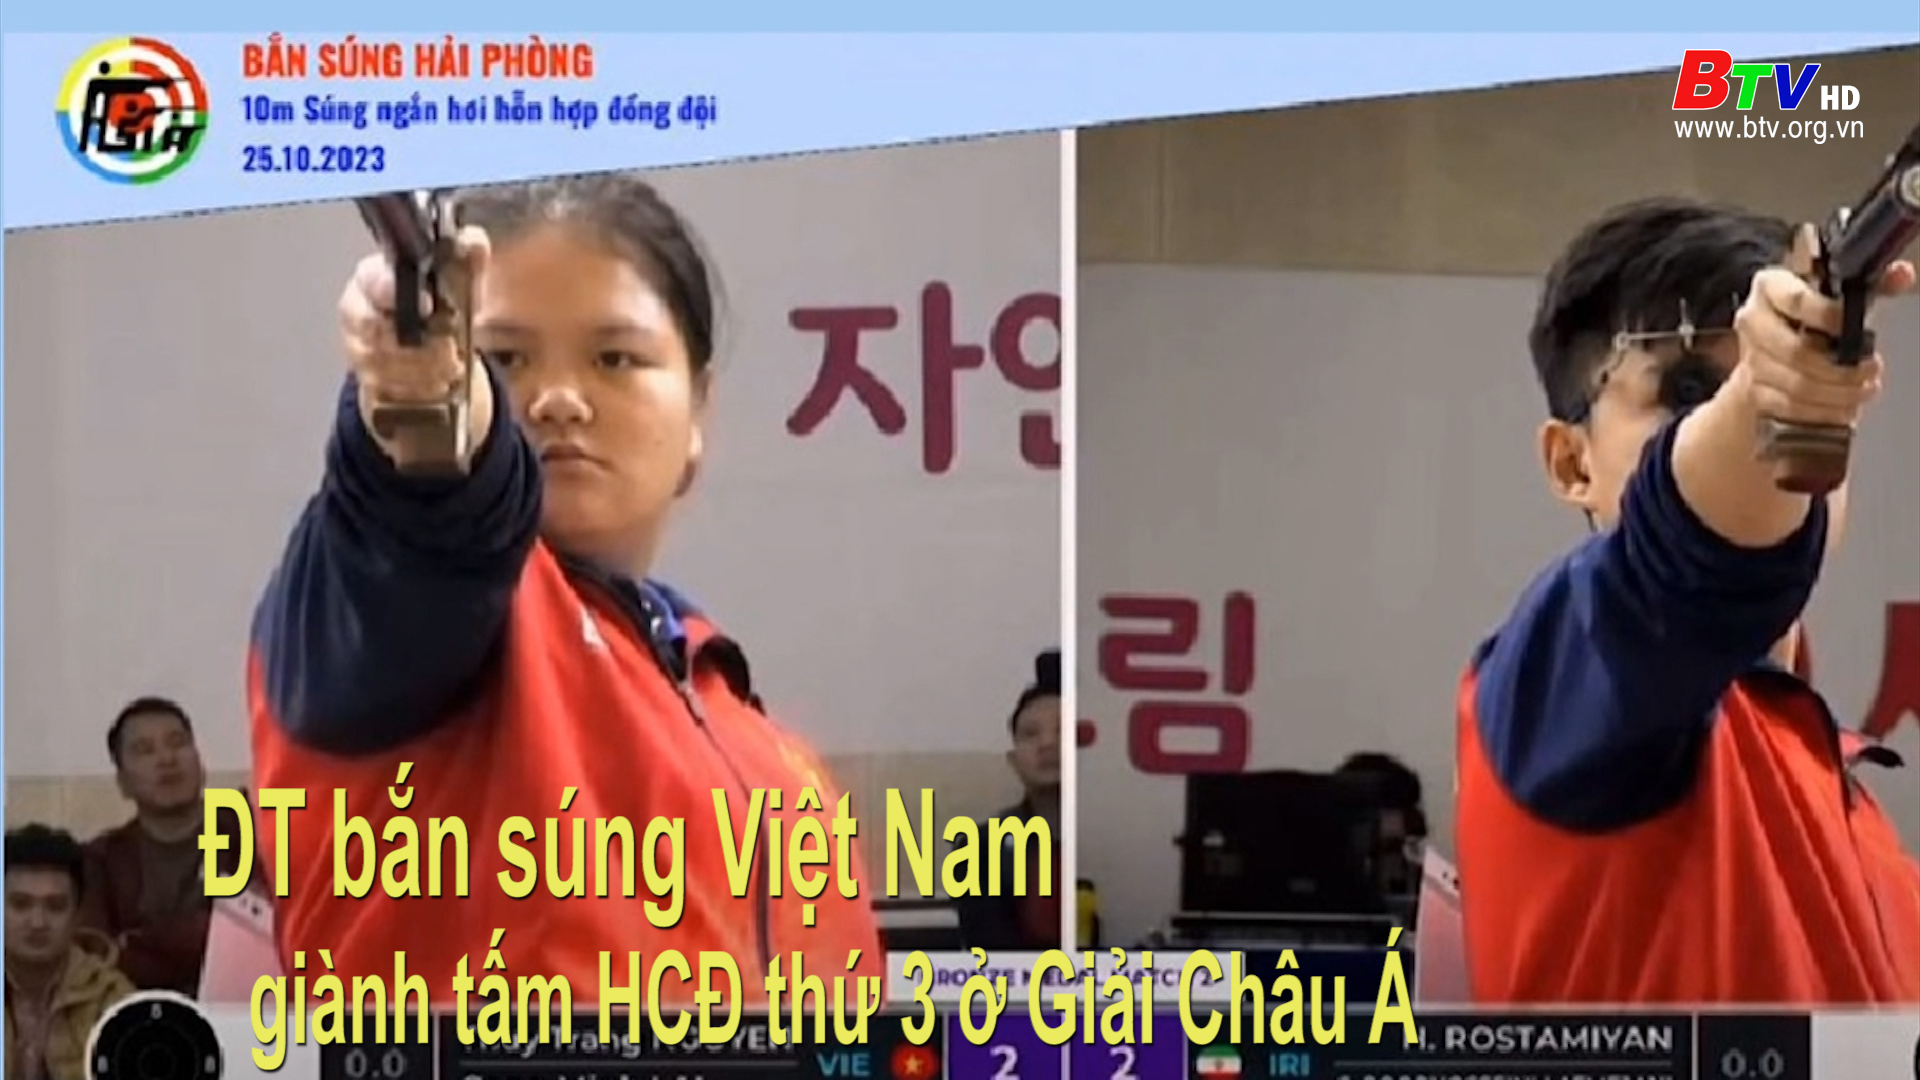 ĐT bắn súng Việt Nam giành tấm HCĐ thứ 3 ở Giải châu Á